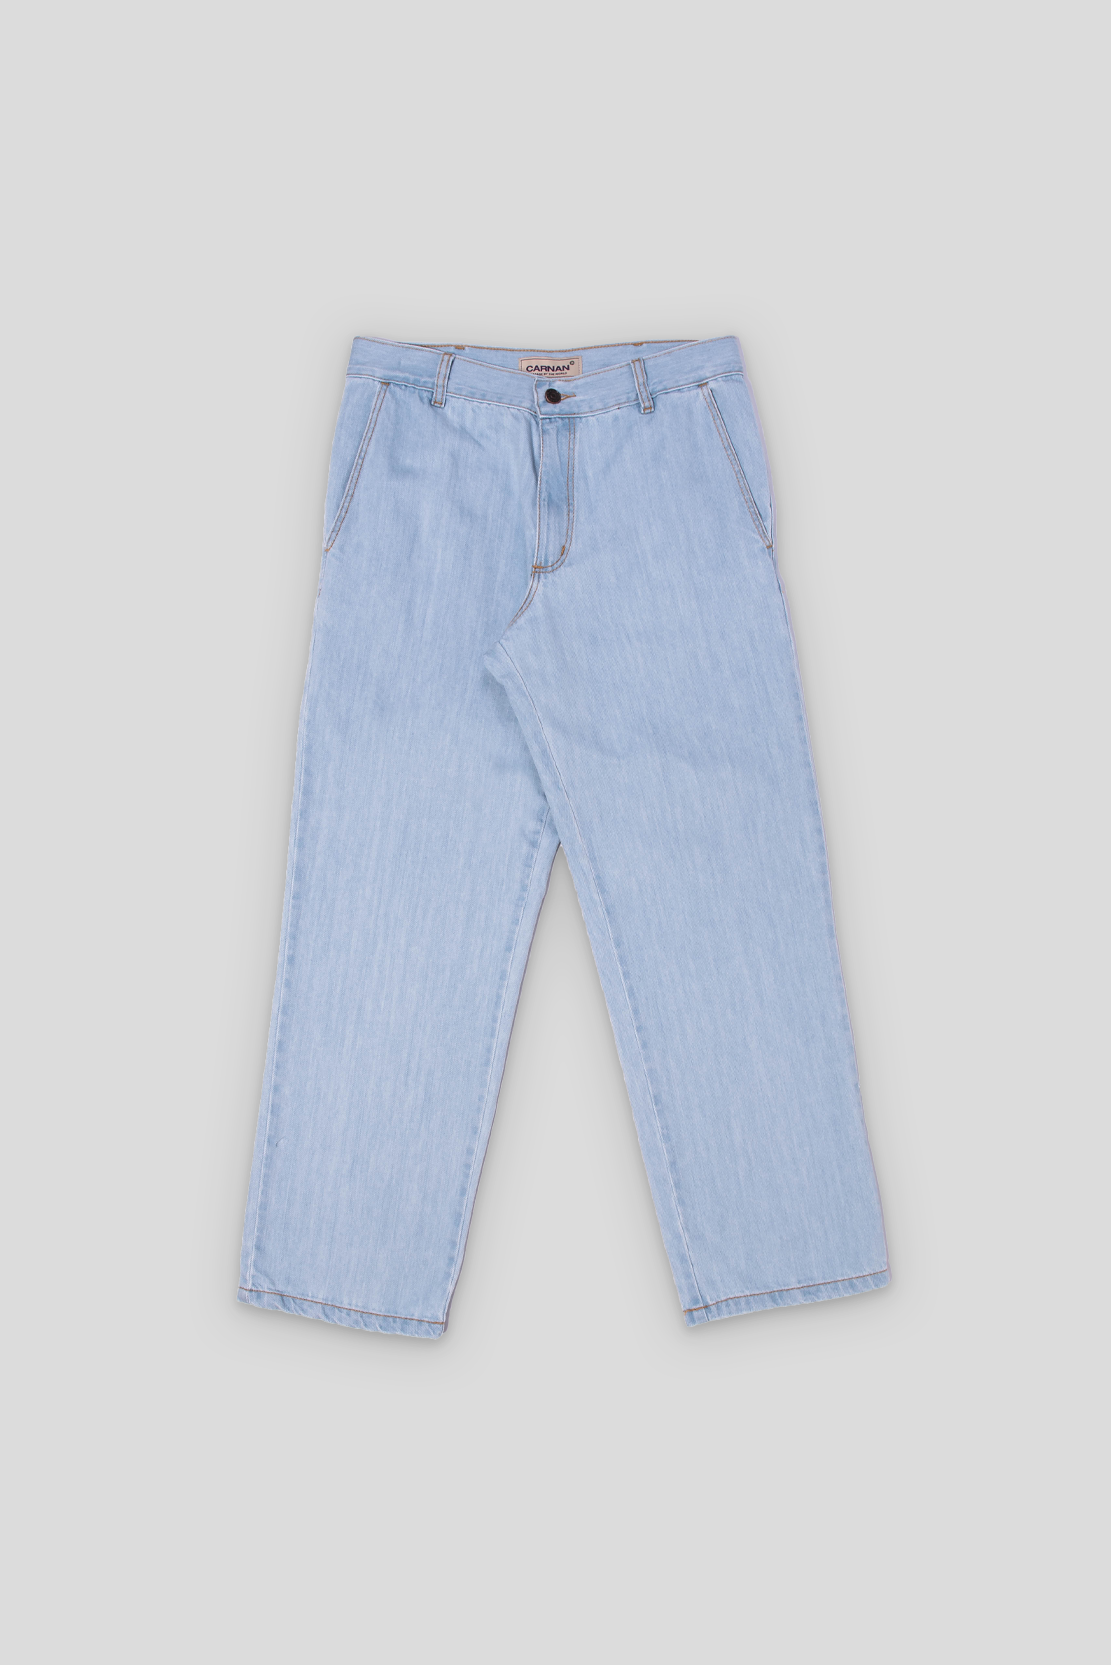 Imagem do produto Malecon Jeans 